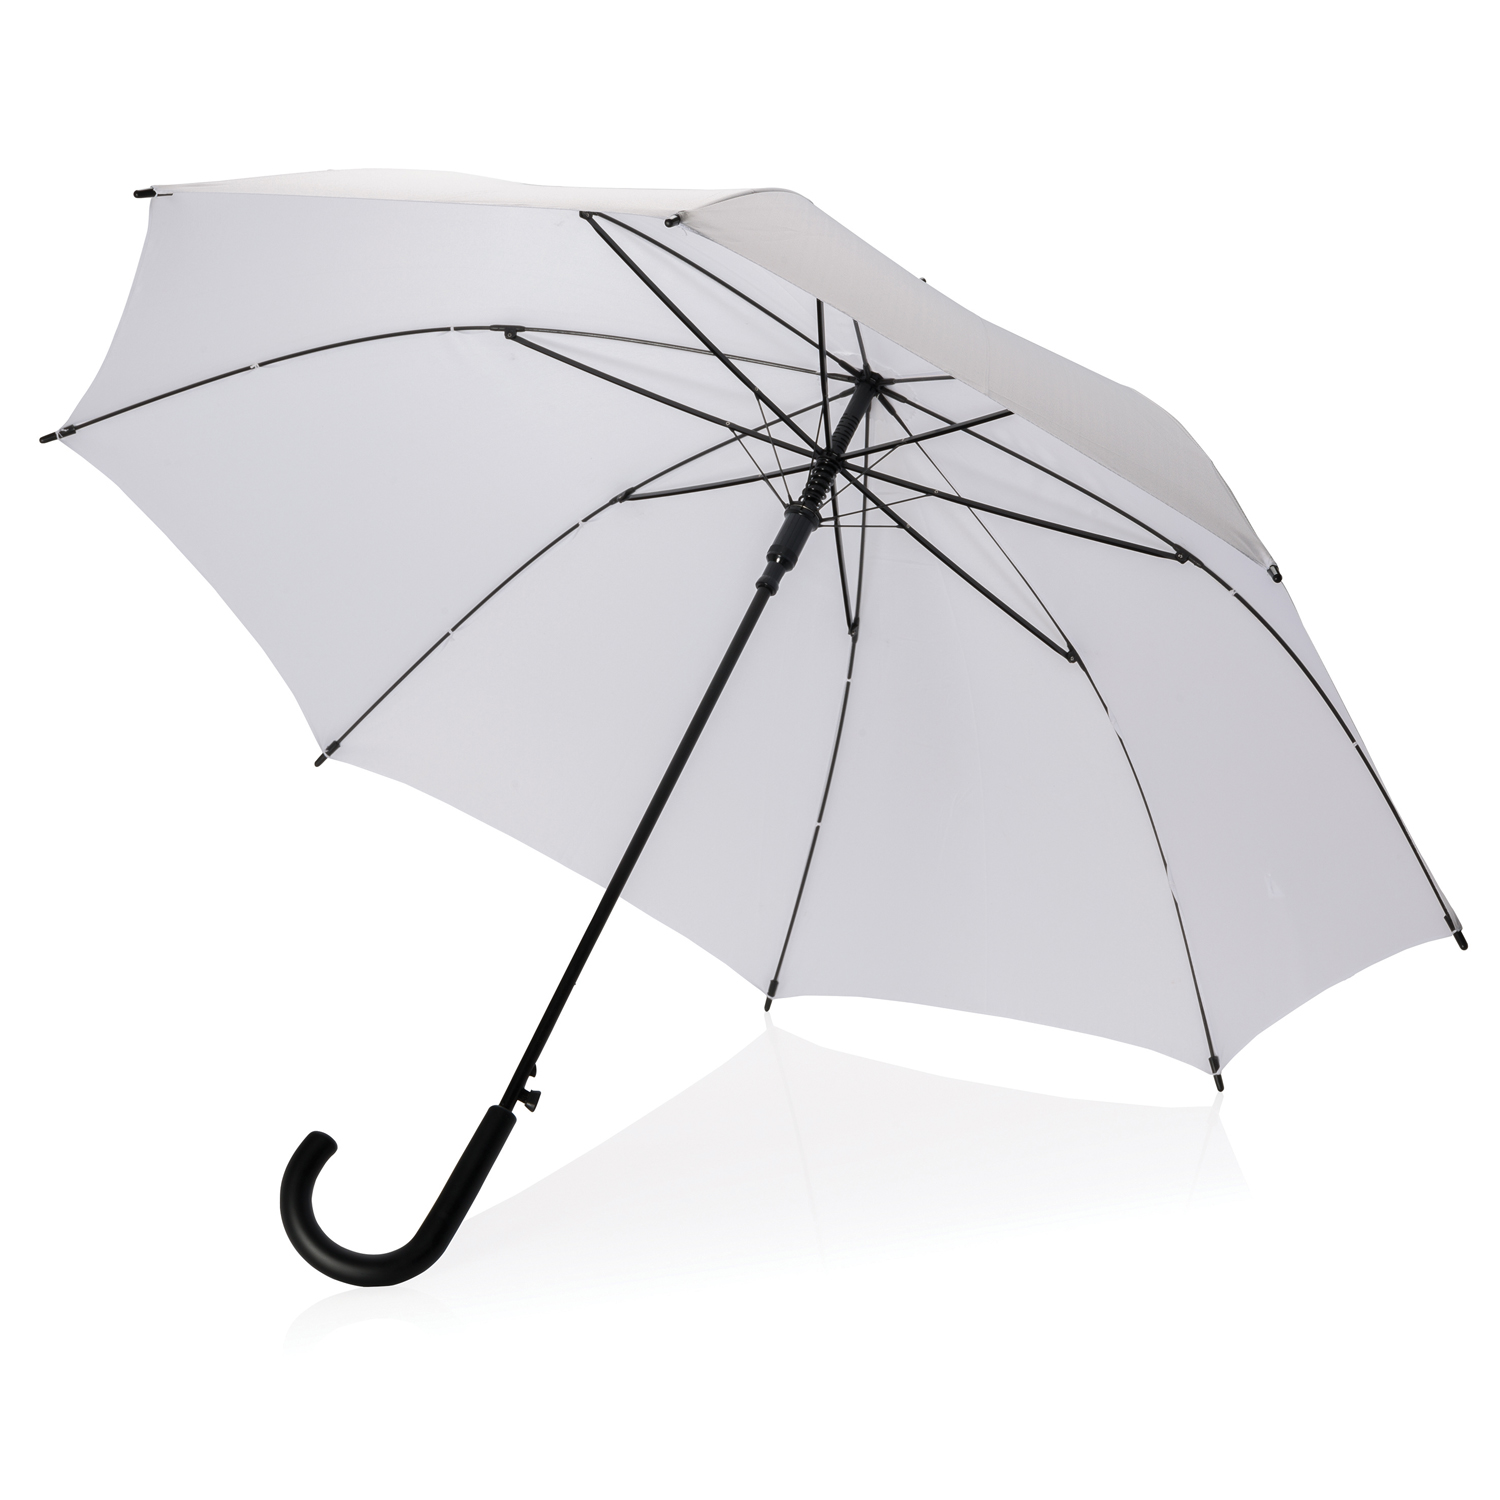 Зонтик легкий. Зонт "s.570 large Automatic, Uni Black". Зонт складной Hamilton. Зонт s7. Необычные зонты.